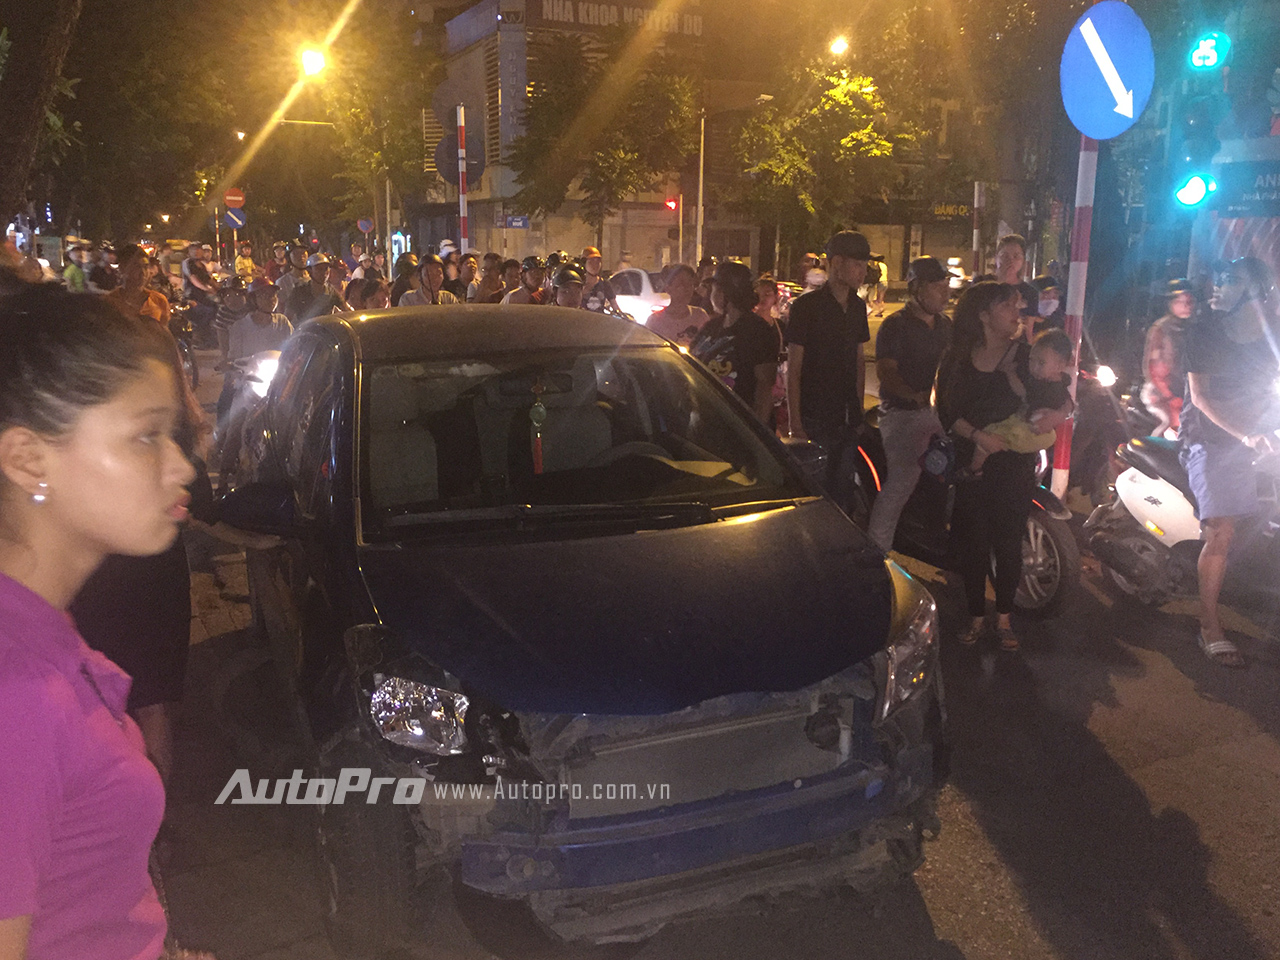 
Tại ngã tư phố Huế - Lê Văn Hưu, người dân đã chặn được chiếc xe Toyota Yaris.
